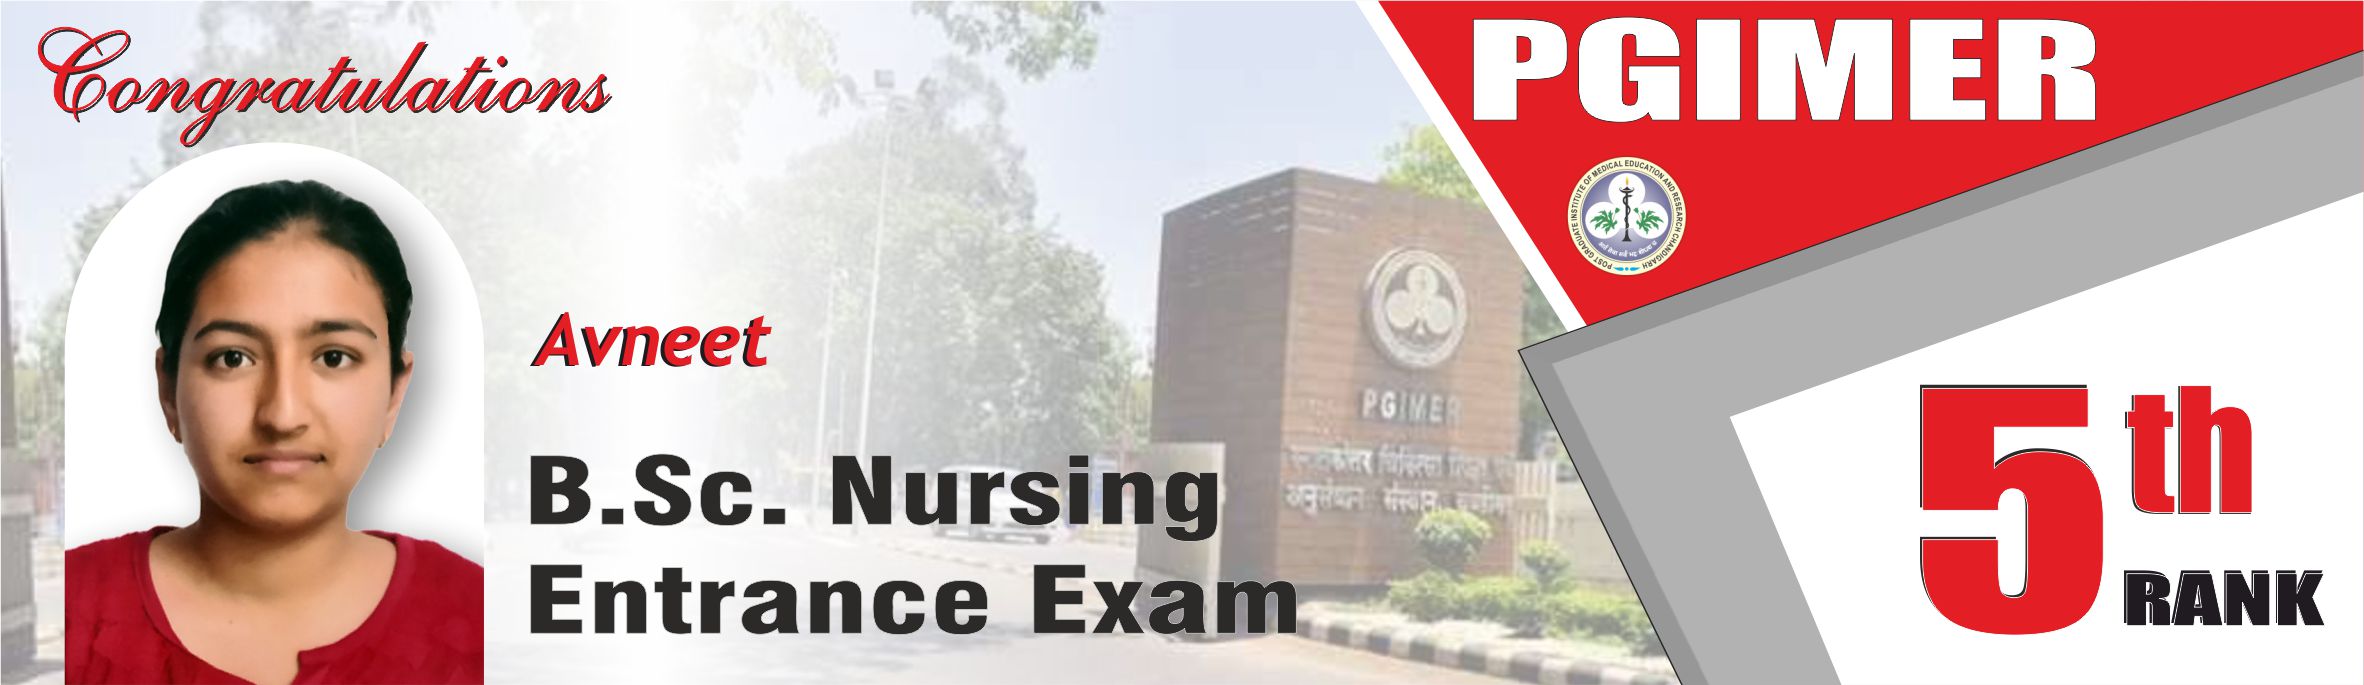 9-bsc-nursing-entrance-exam-result-in-chandigarh